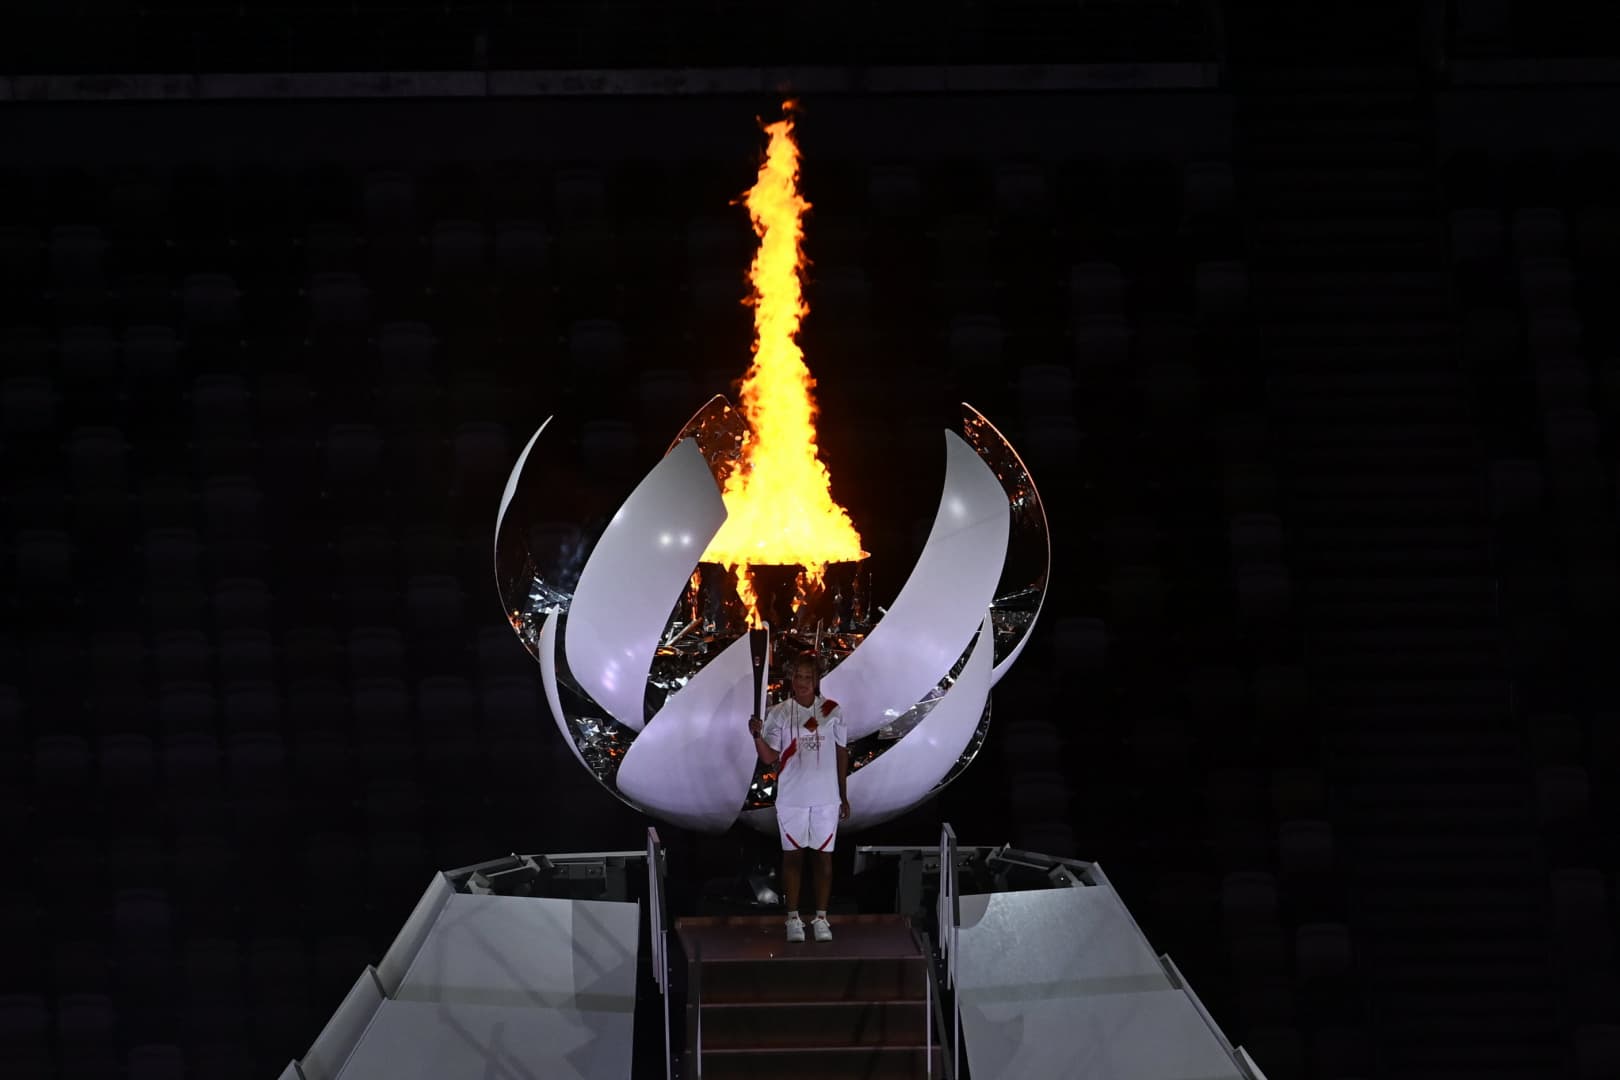 Tokió 2020 - Oszaka Naomi gyújtotta meg az olimpiai lángot